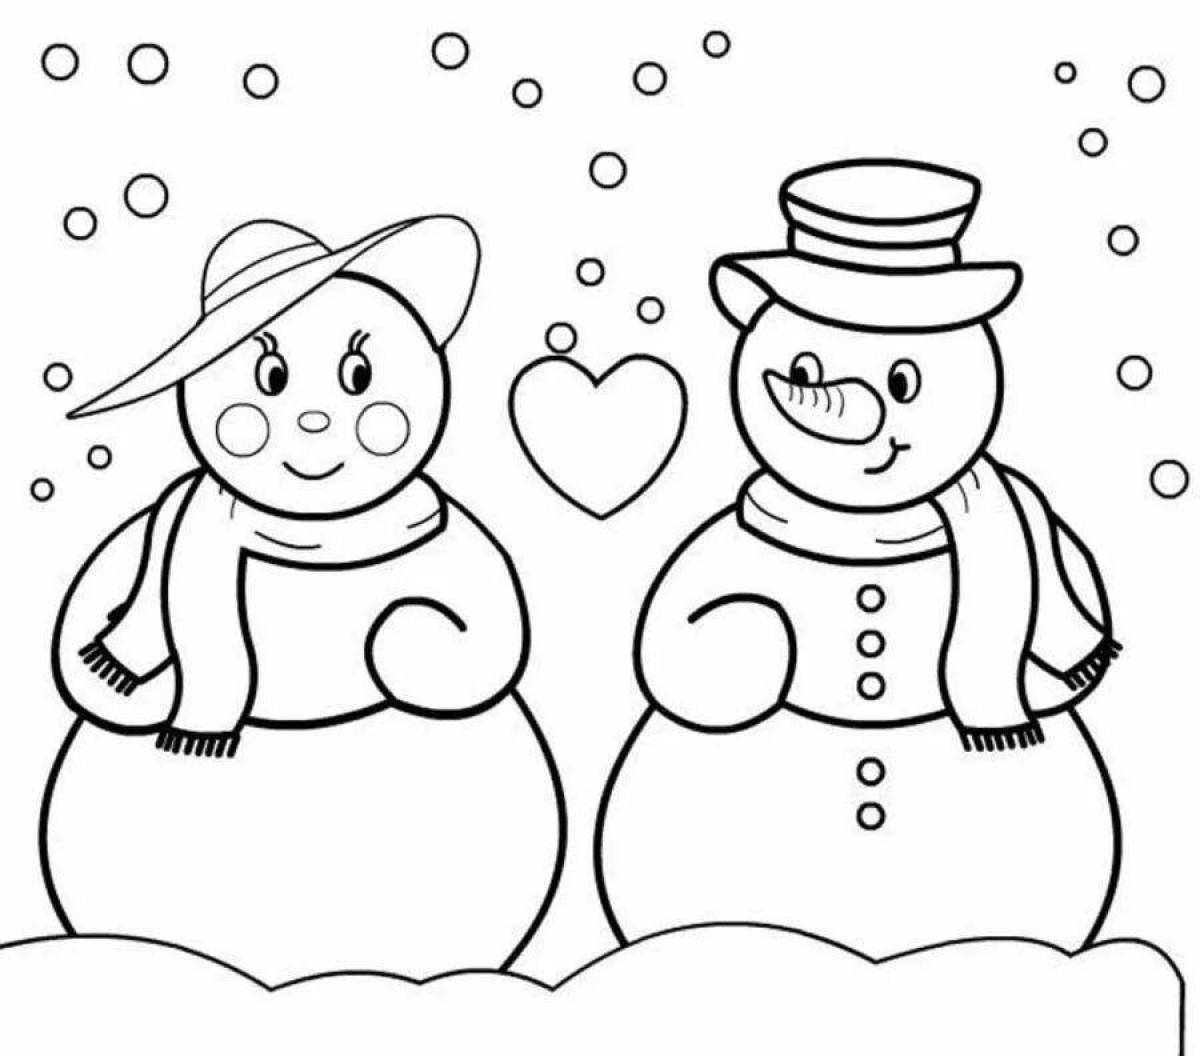 Креативная раскраска снеговик для детей 2-3 лет